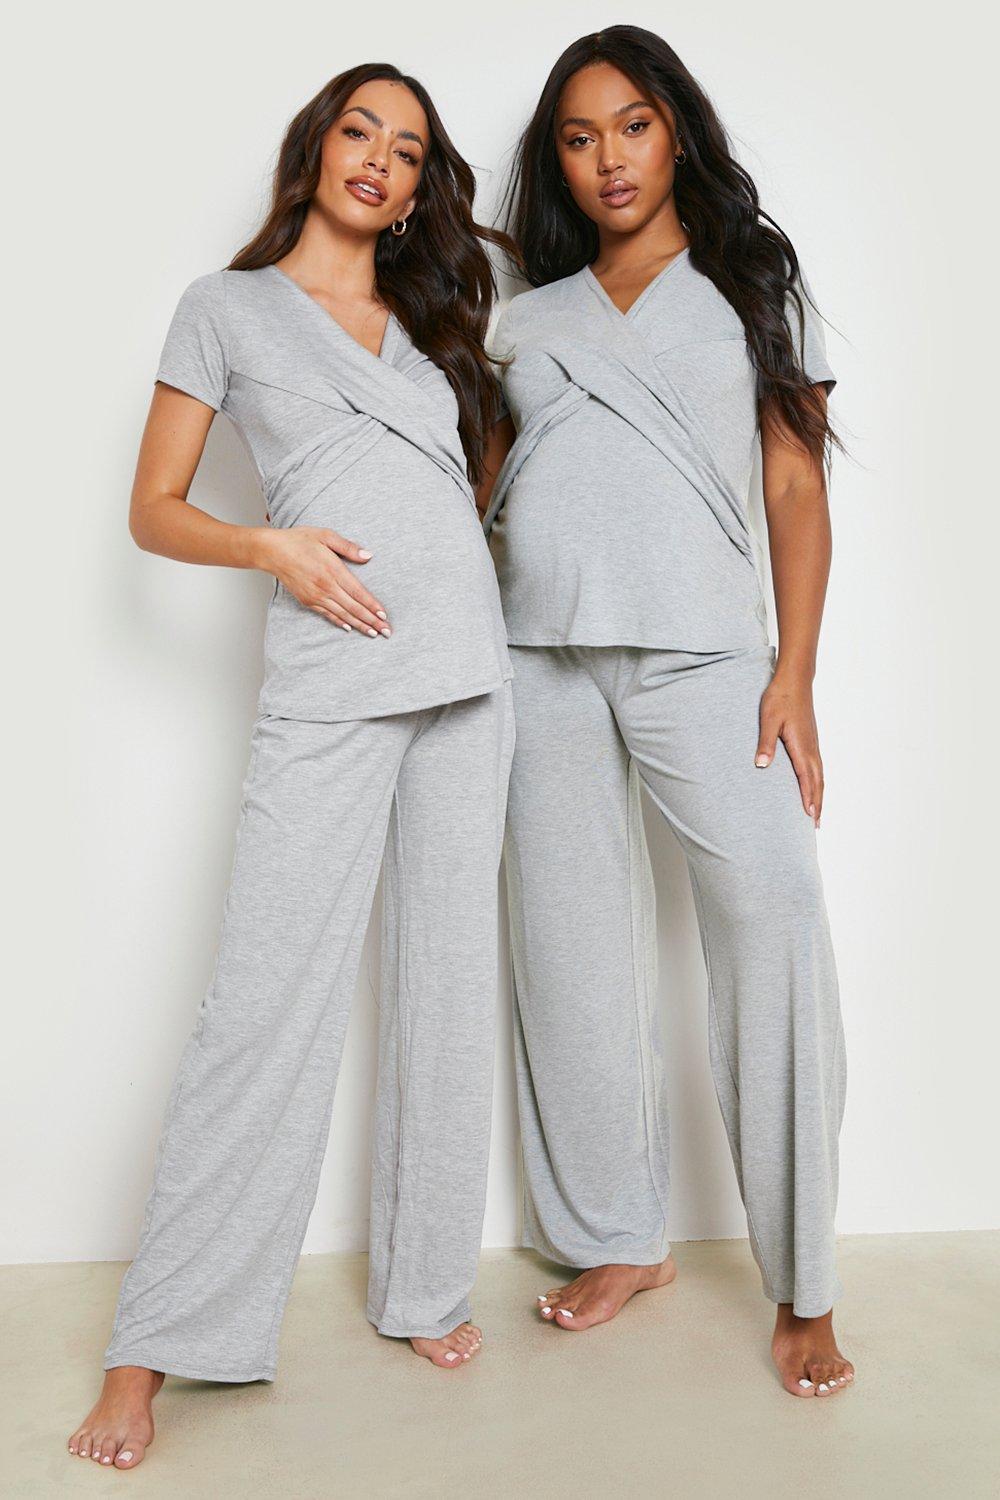 Quel pyjama pour la maternité ?